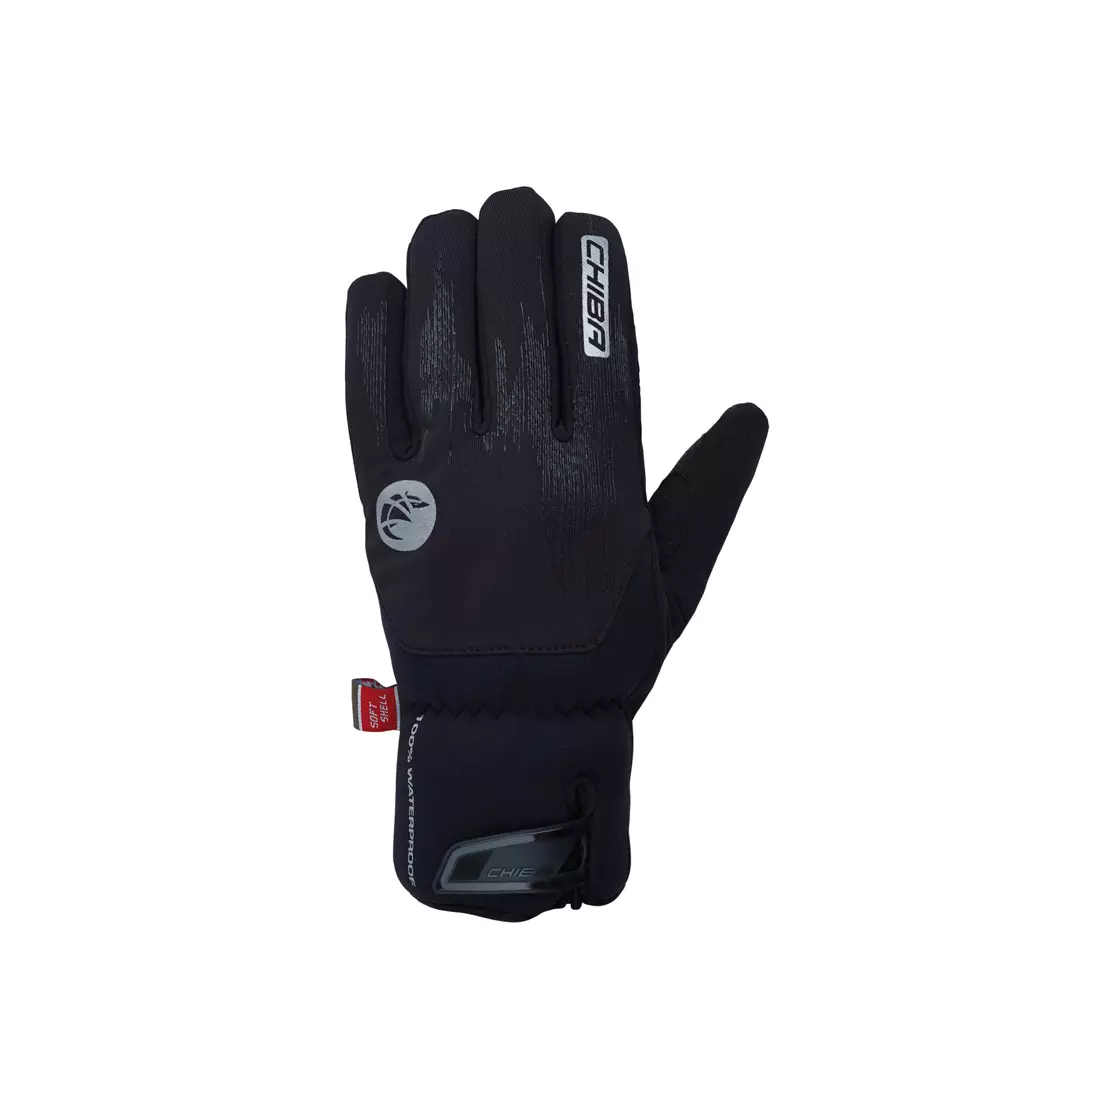 CHIBA DRY STAR SUPERLIGHT zimní cyklistické rukavice, černá 31217